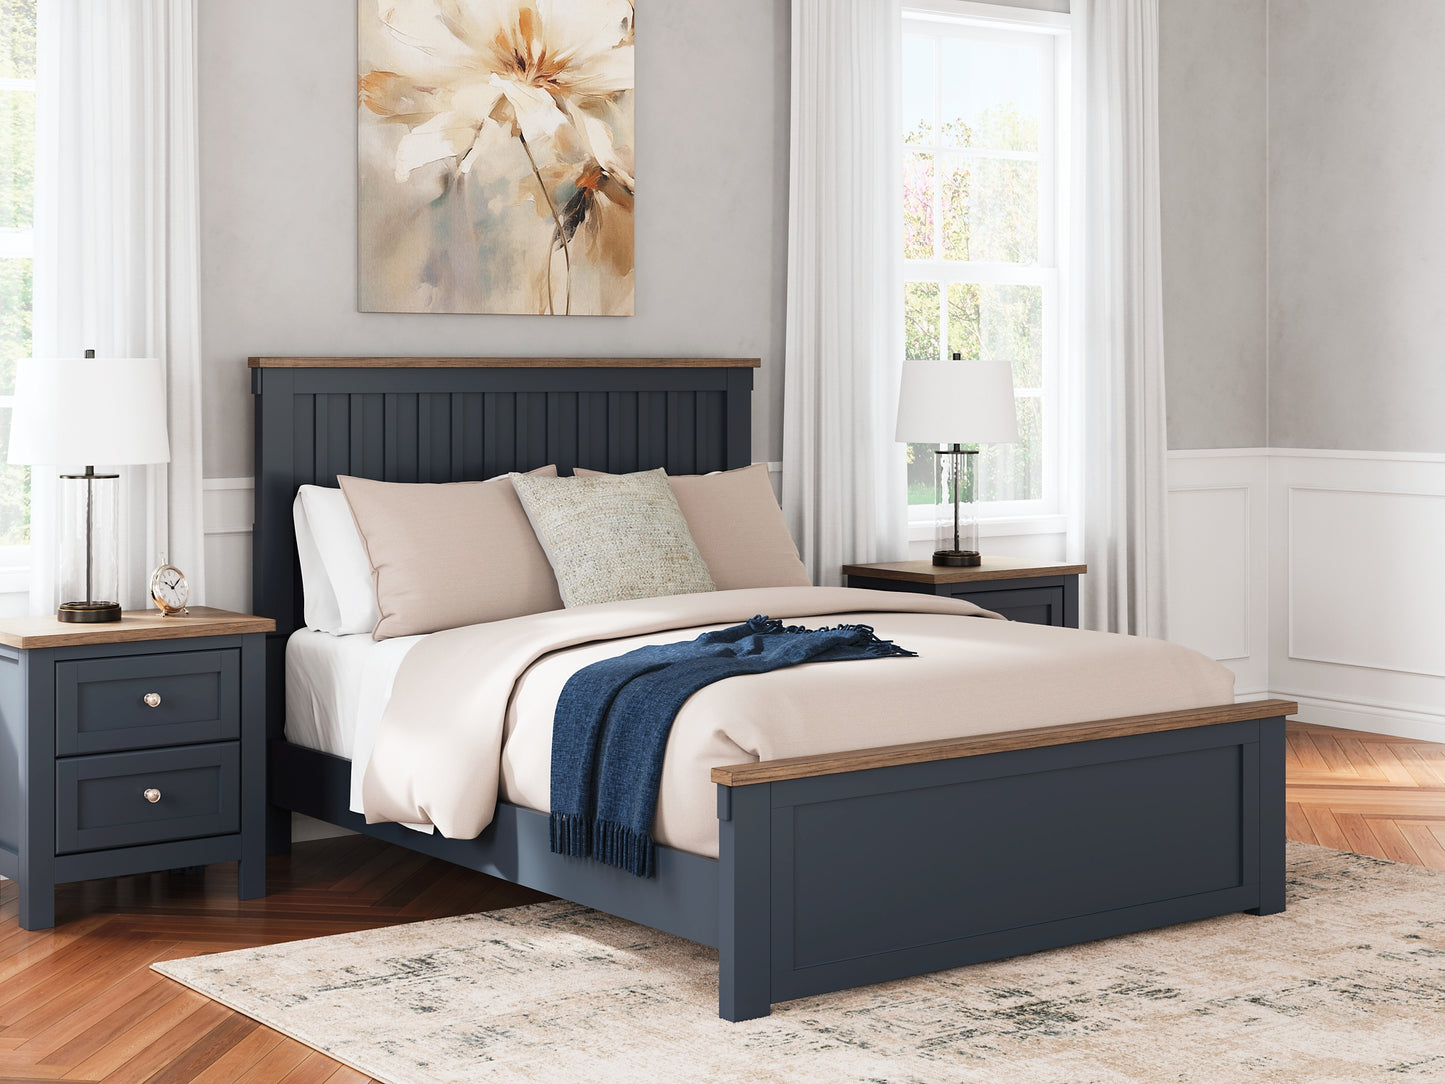 Landocken Queen Panel Bed with Mirrored Dresser and 2 Nightstands